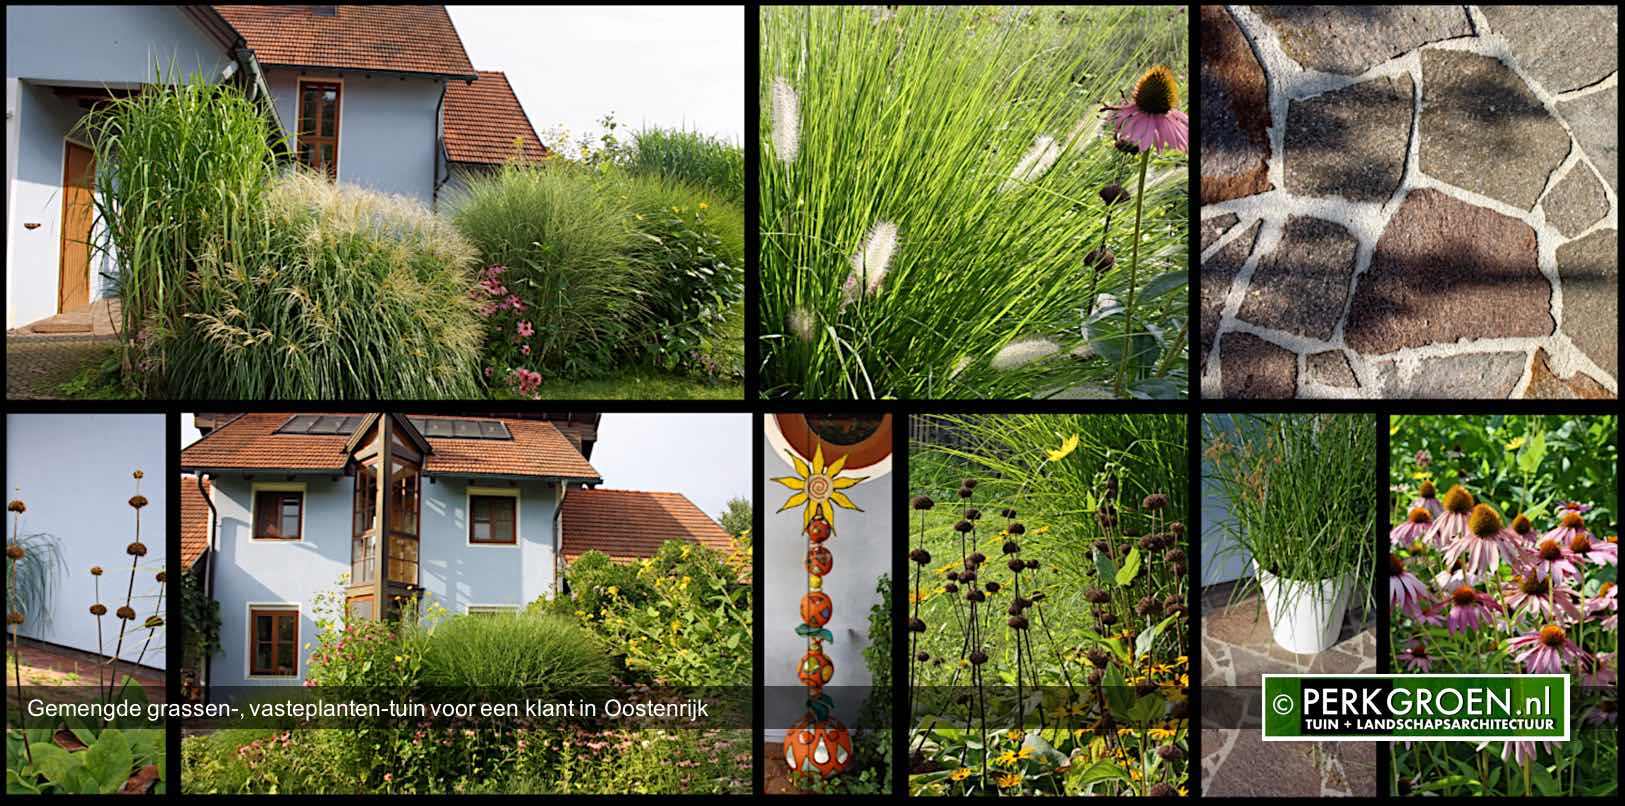 Gemengde grassen- vasteplanten-tuin voor een klant in Oostenrijk